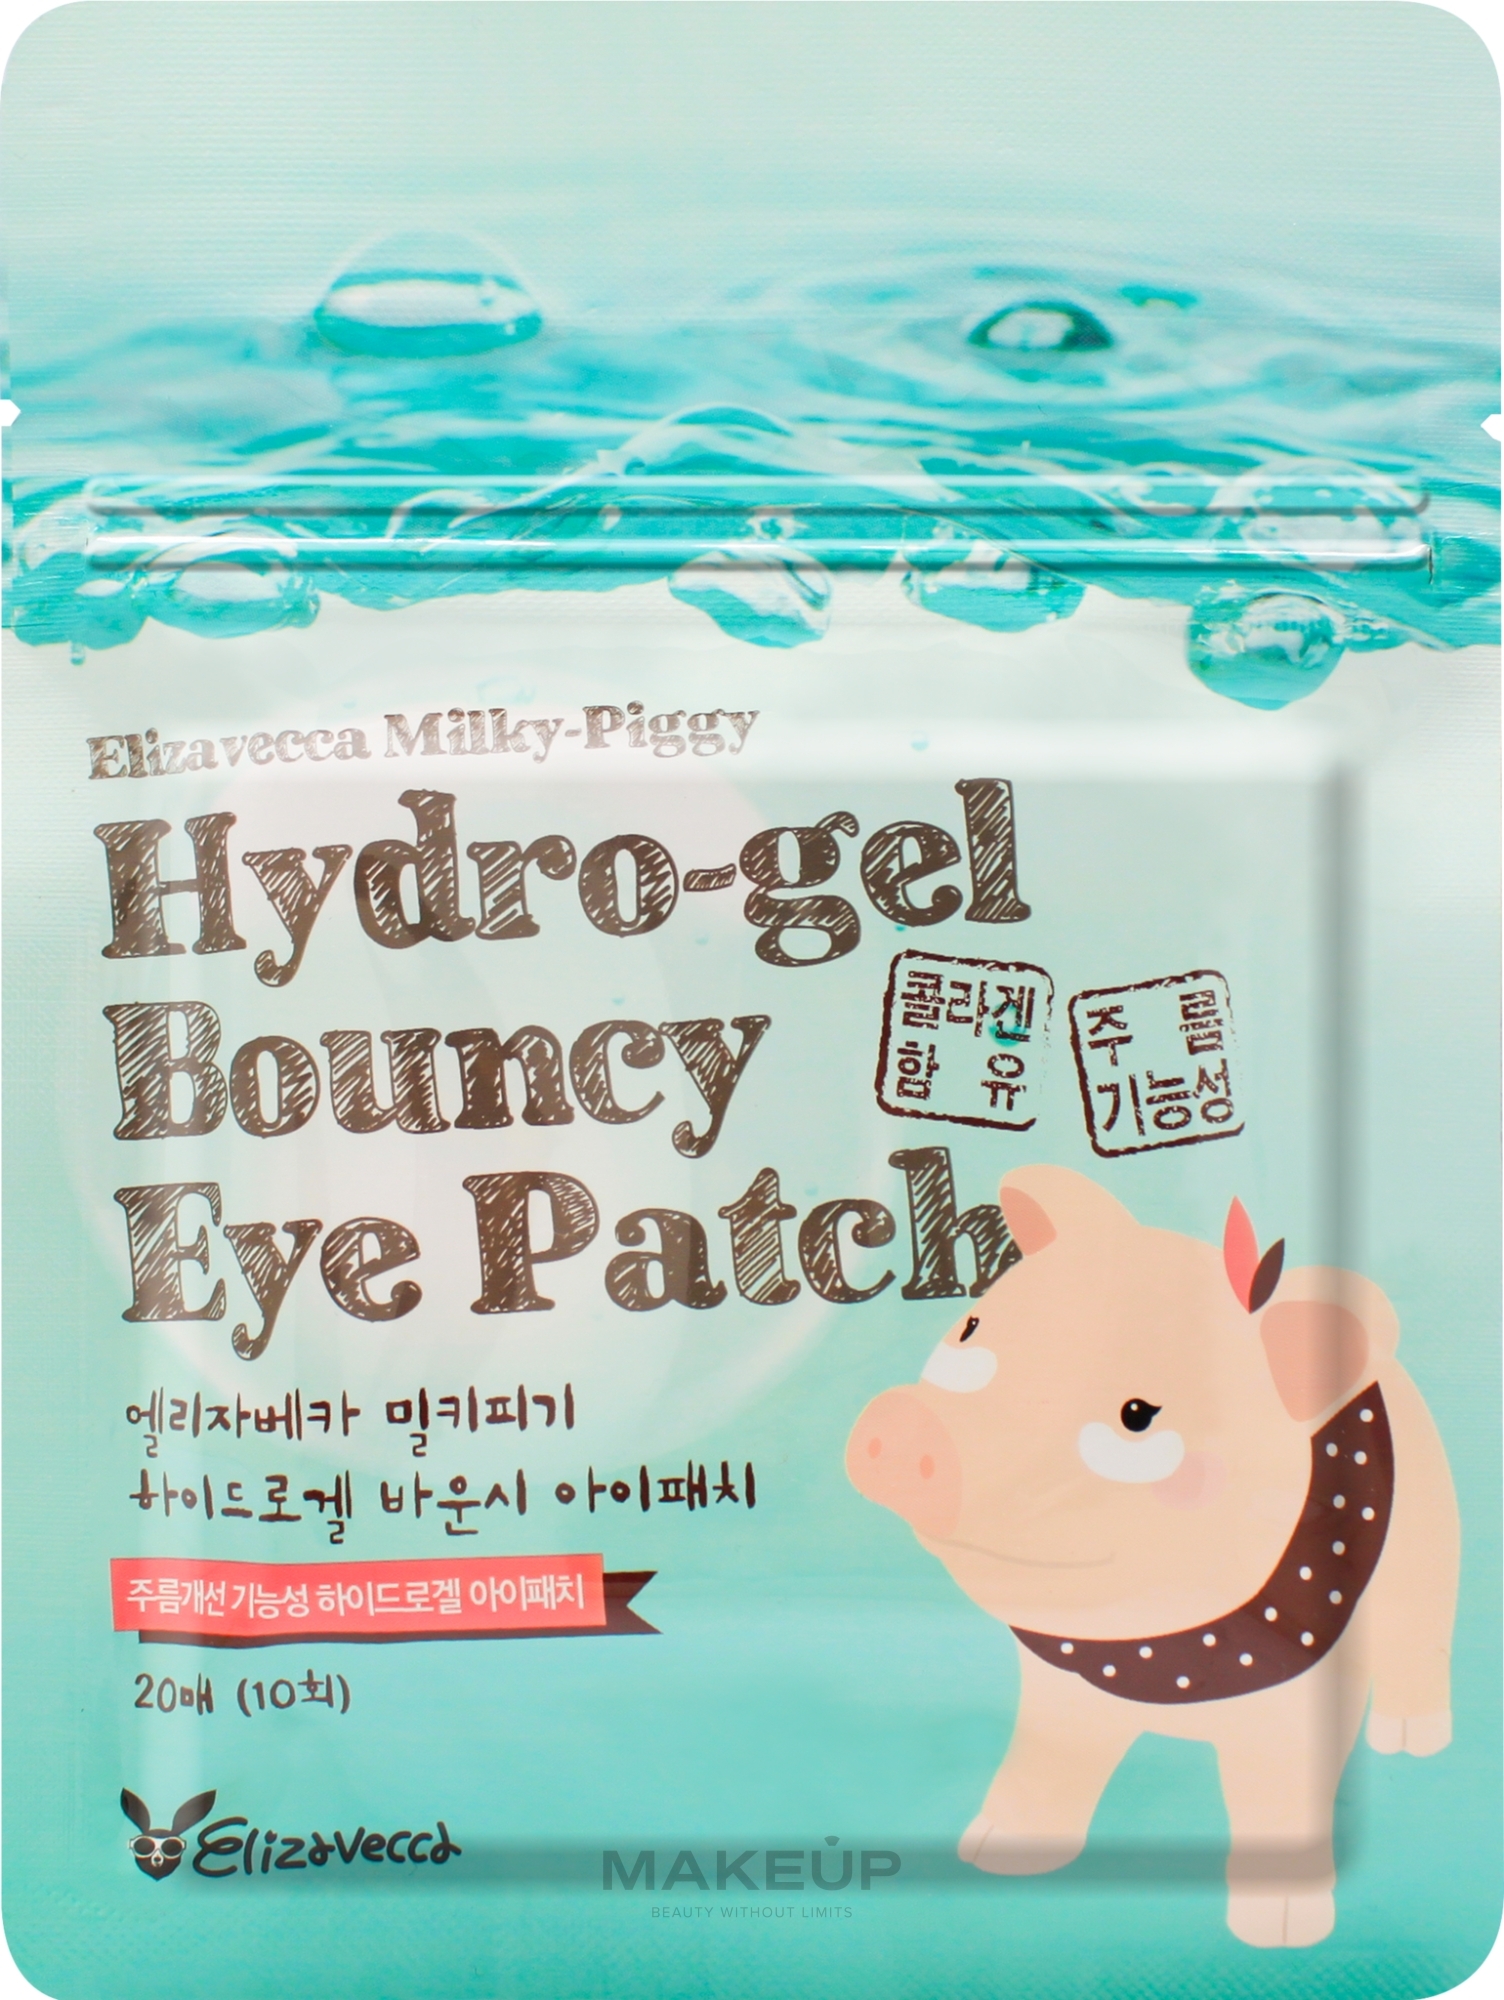 Hydrogel Eye Patch - Elizavecca Face Care Milky Piggy Hydro-gel Bouncy Eye Patch — photo 20 szt.